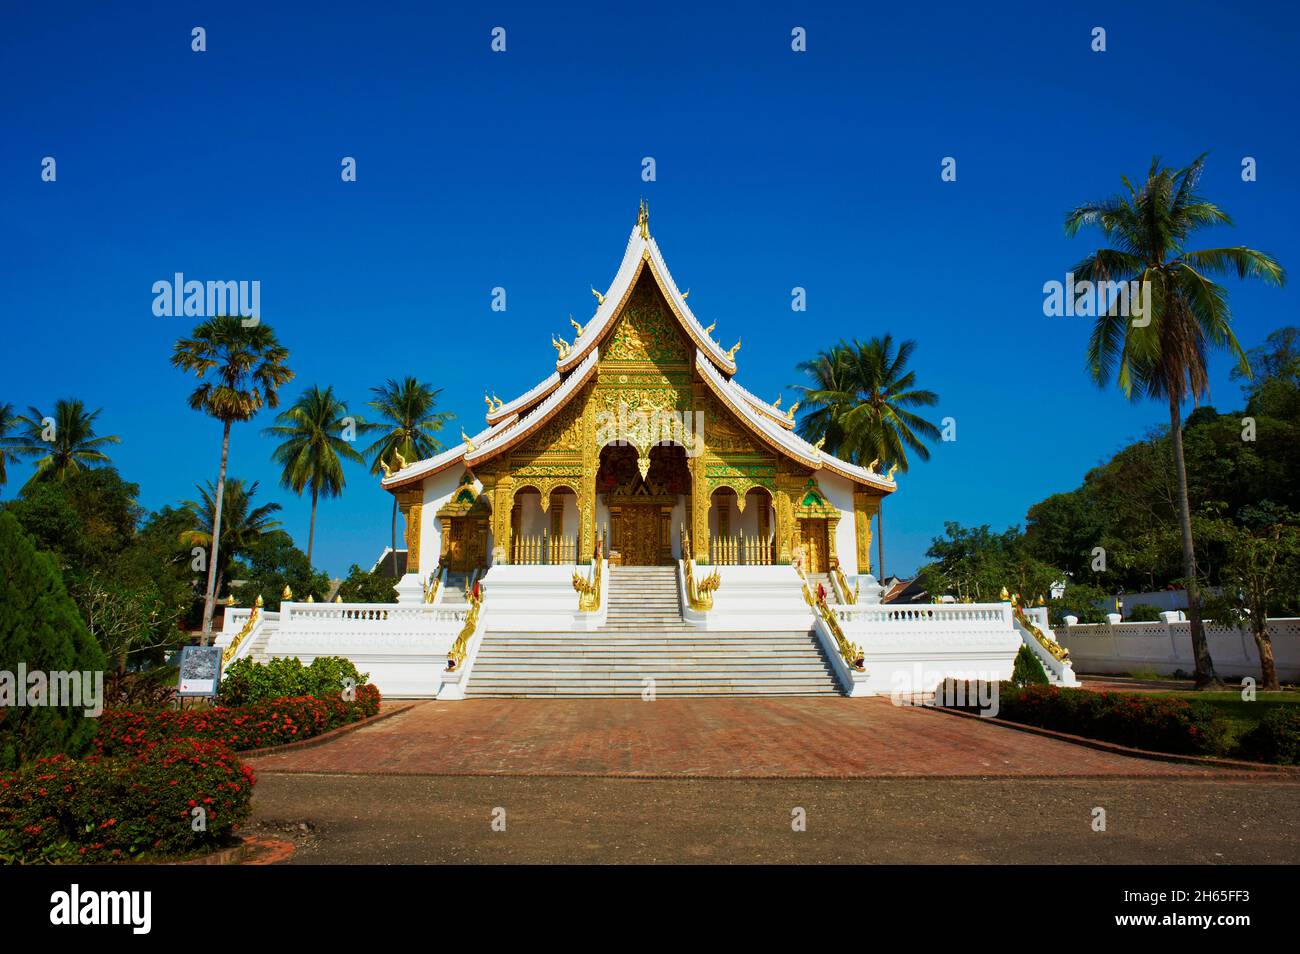 Laos, Provinz Luang Prabang, ville de Luang Prabang, Patrimoine mondial de l'UNESCO depuis 1995, musee du Palais Royal (Ho Kham), le Temple dore W Stockfoto